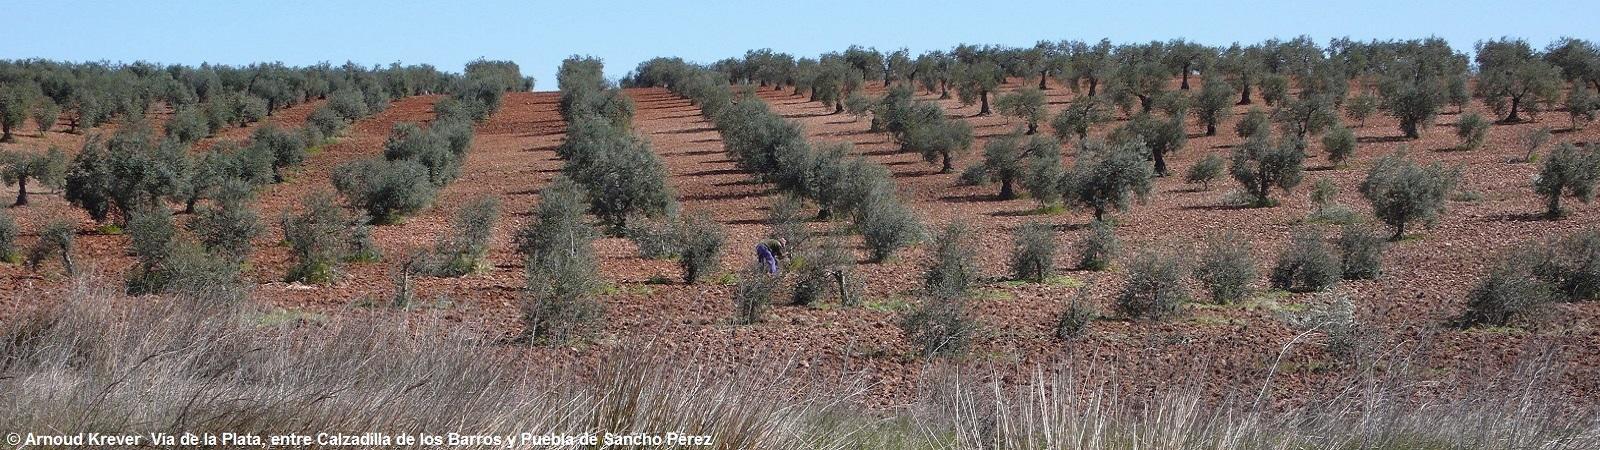 Plata0268 Uitzicht na de oversteek van de verharde weg naar Palancares, olijfboomgaard met landarbeider